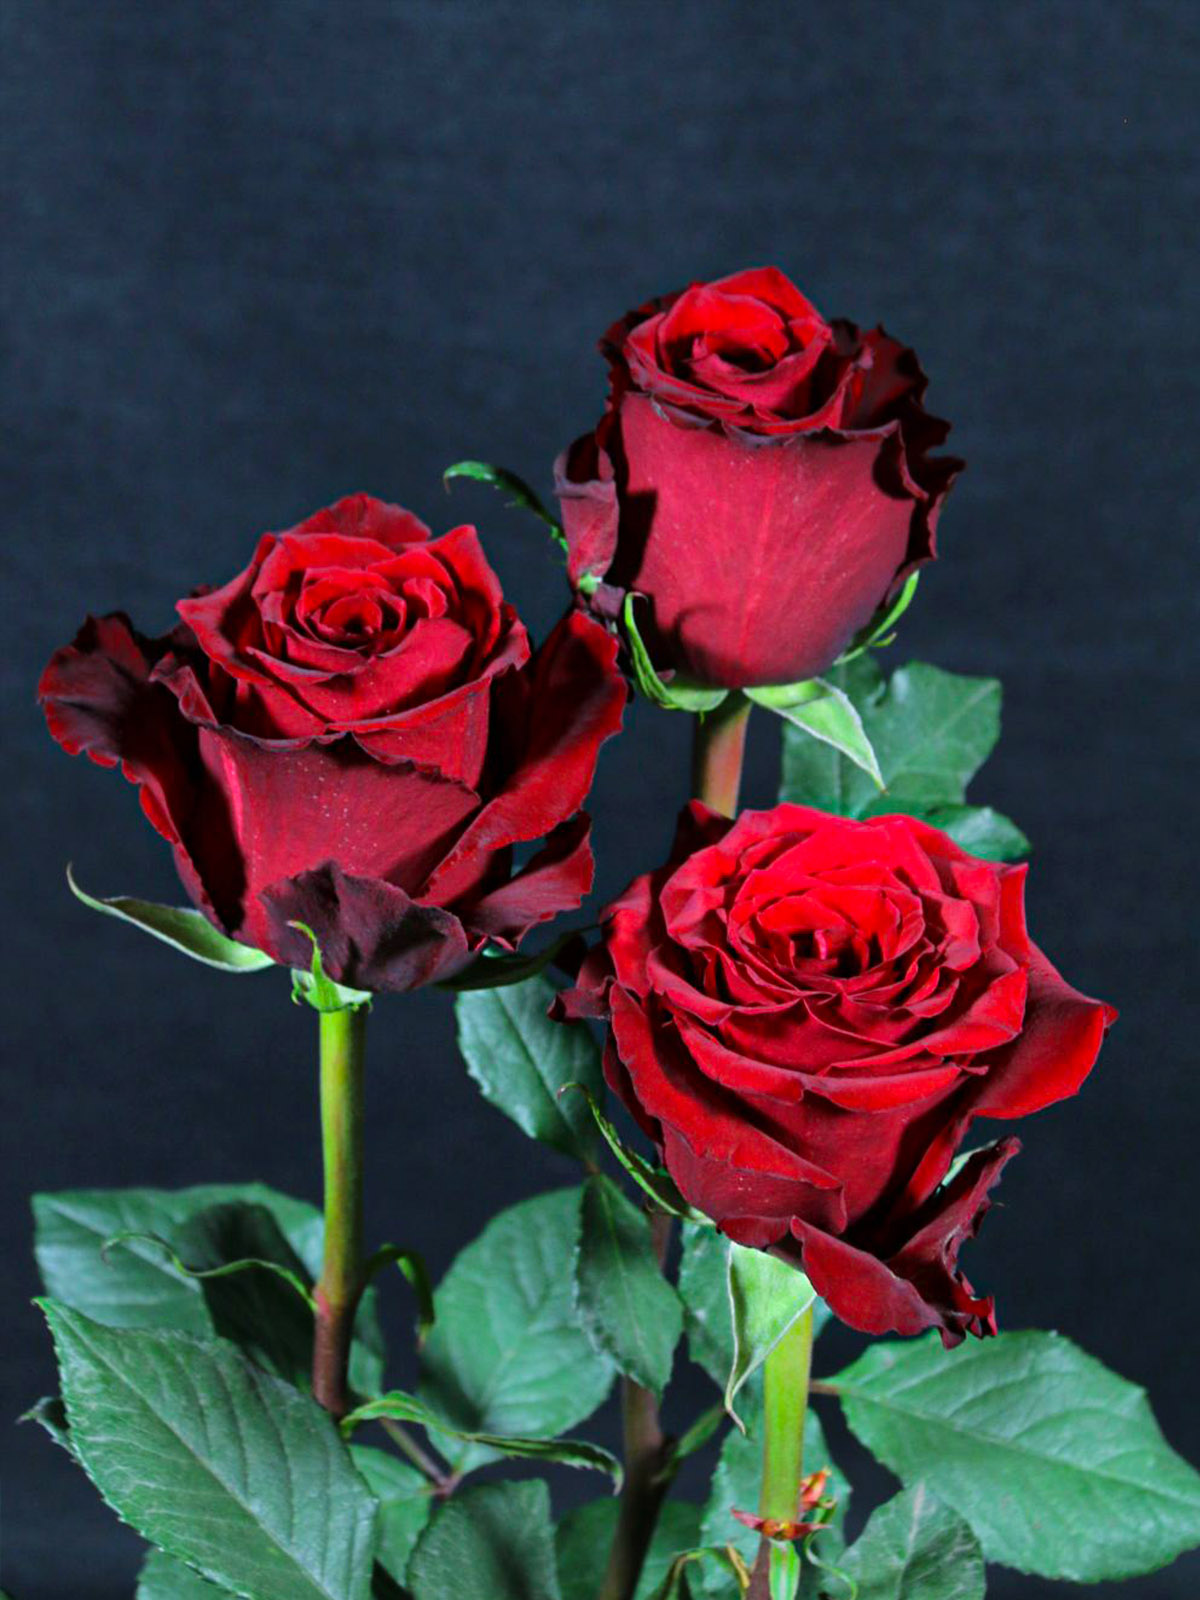 De Ruiter's red rose Born Free - on Thursd